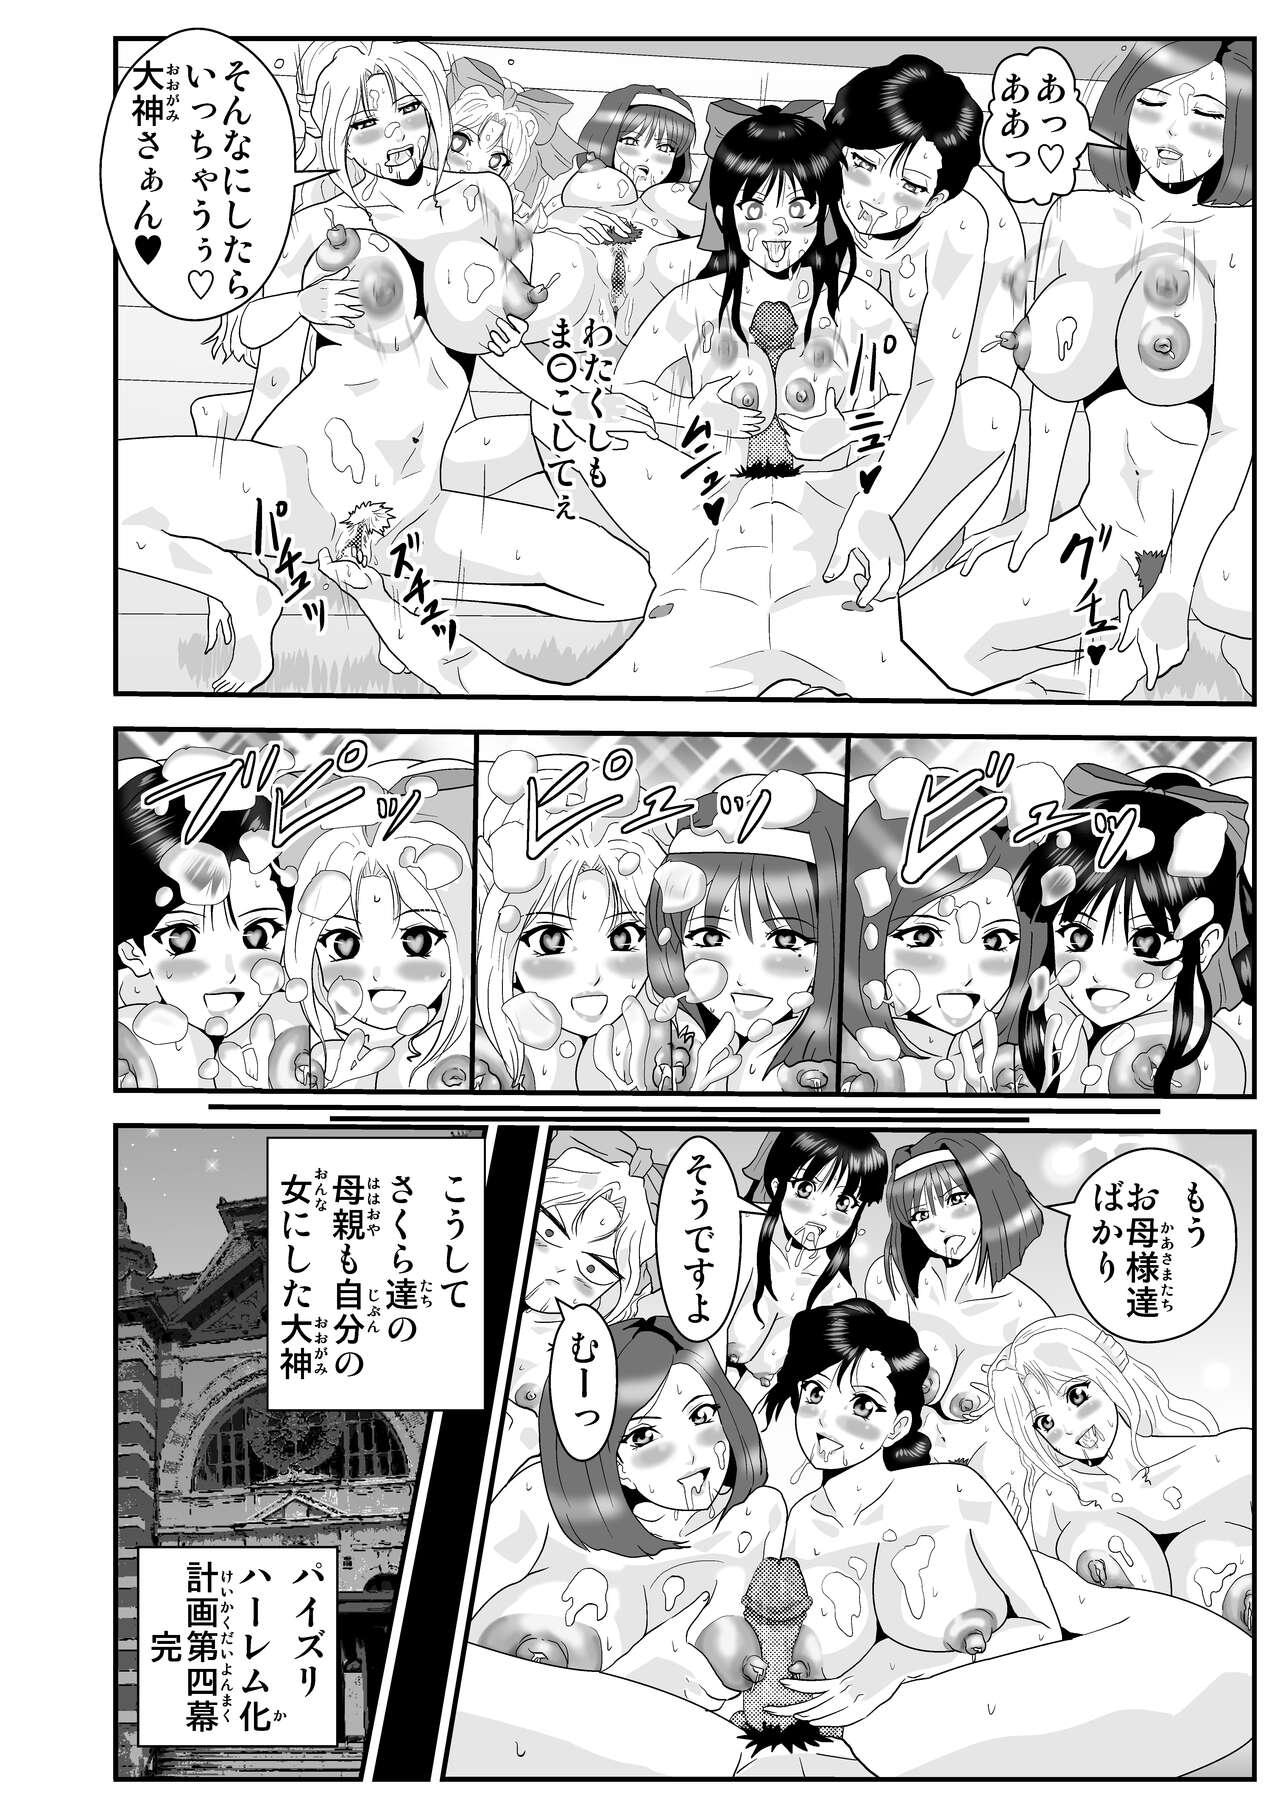 Clip Kagekidan Paizuri Harem-ka Keikaku - Sakura taisen | sakura wars Time - Page 30